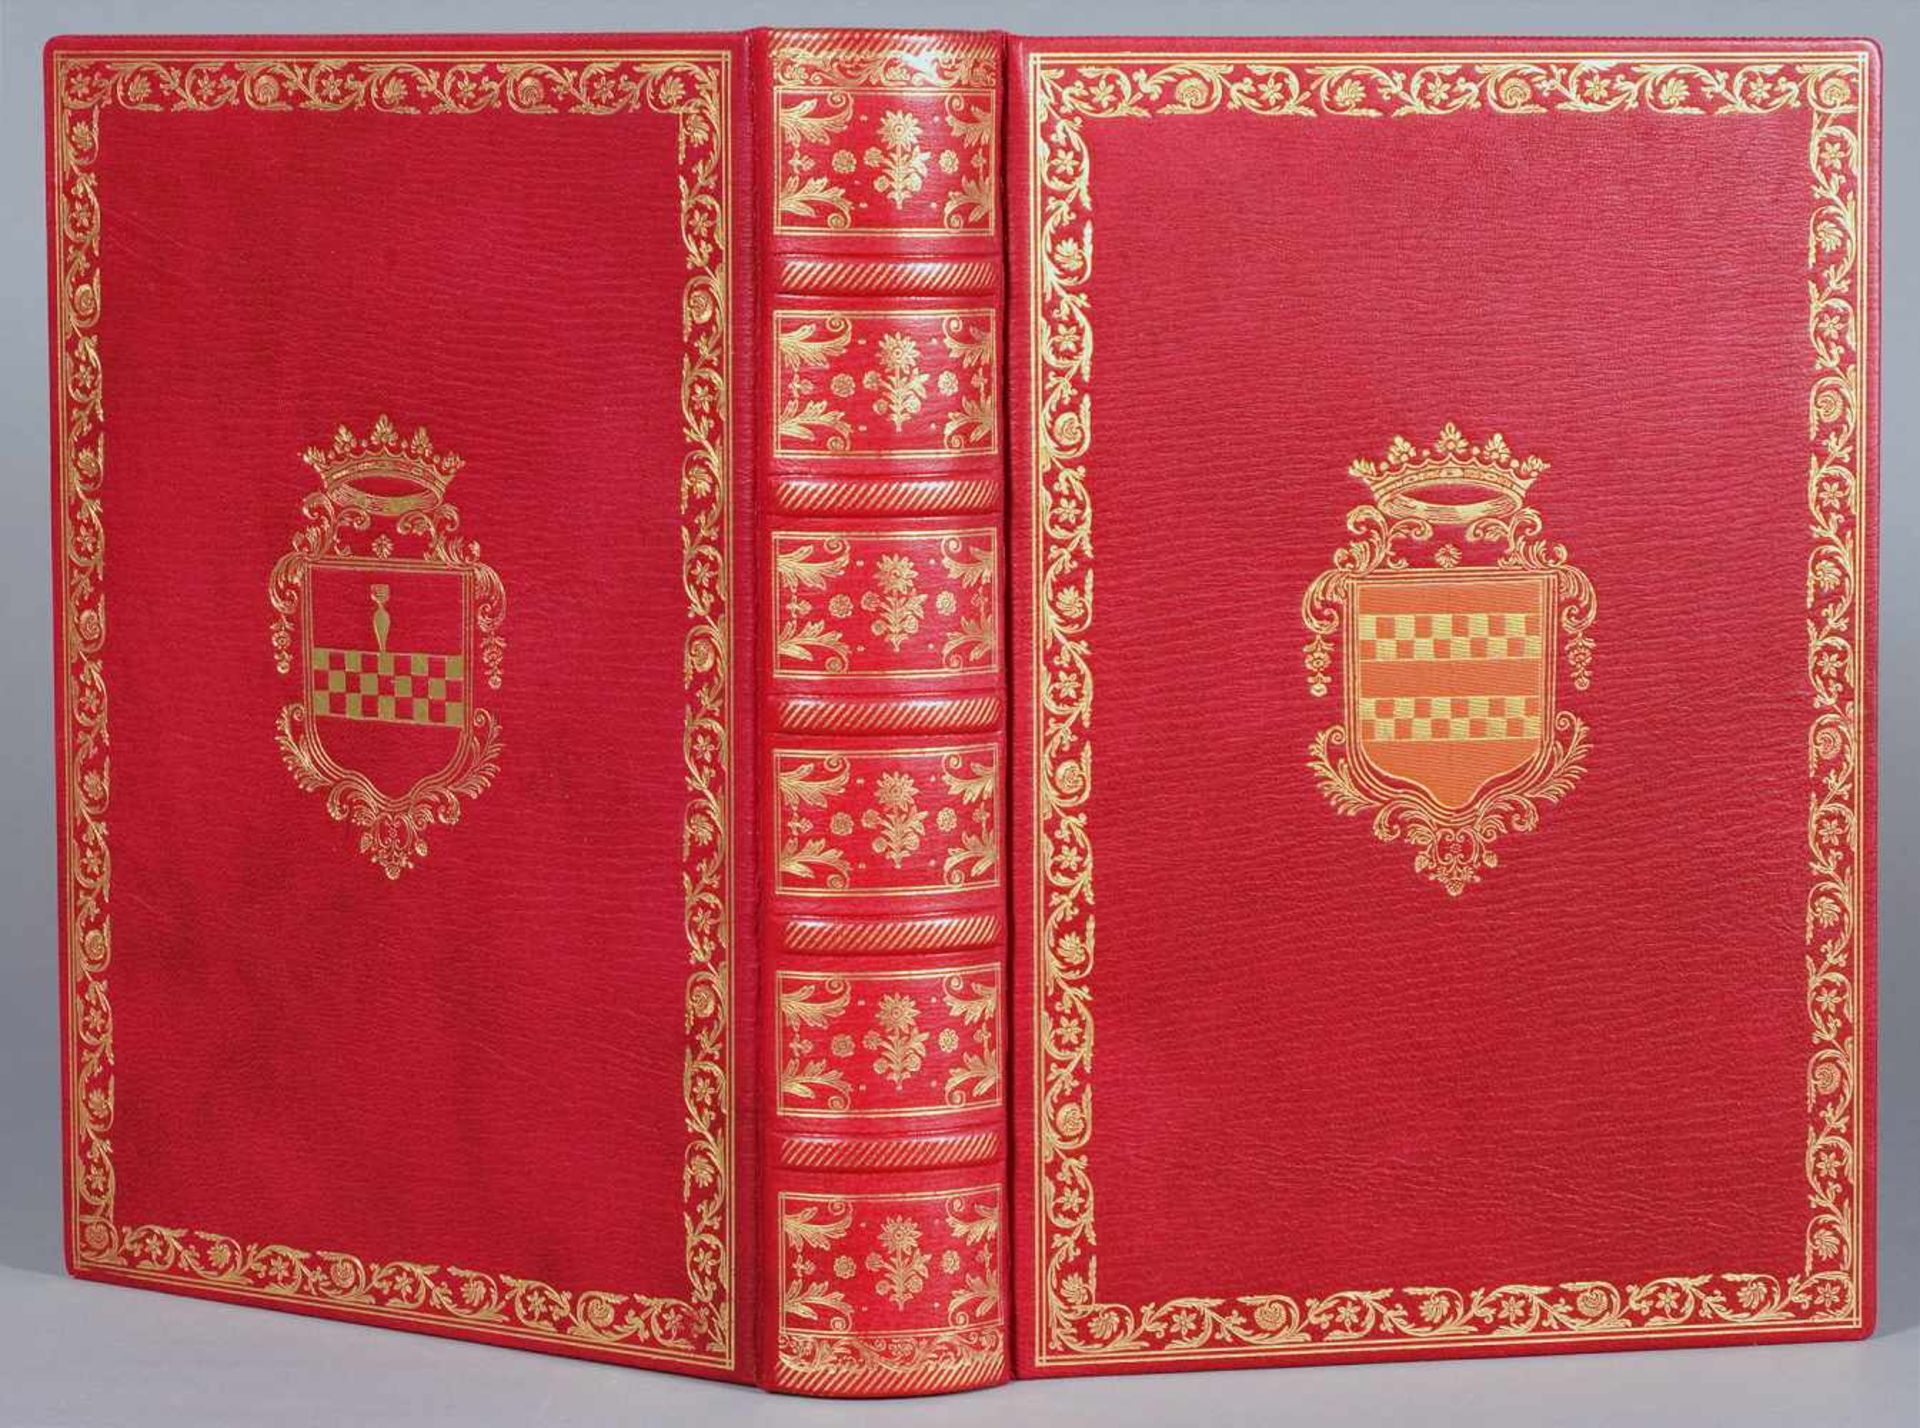 Faksimiles - Les Très Riches Heures du Duc de Berry. Manuscript No. 65 im Musée Condé in